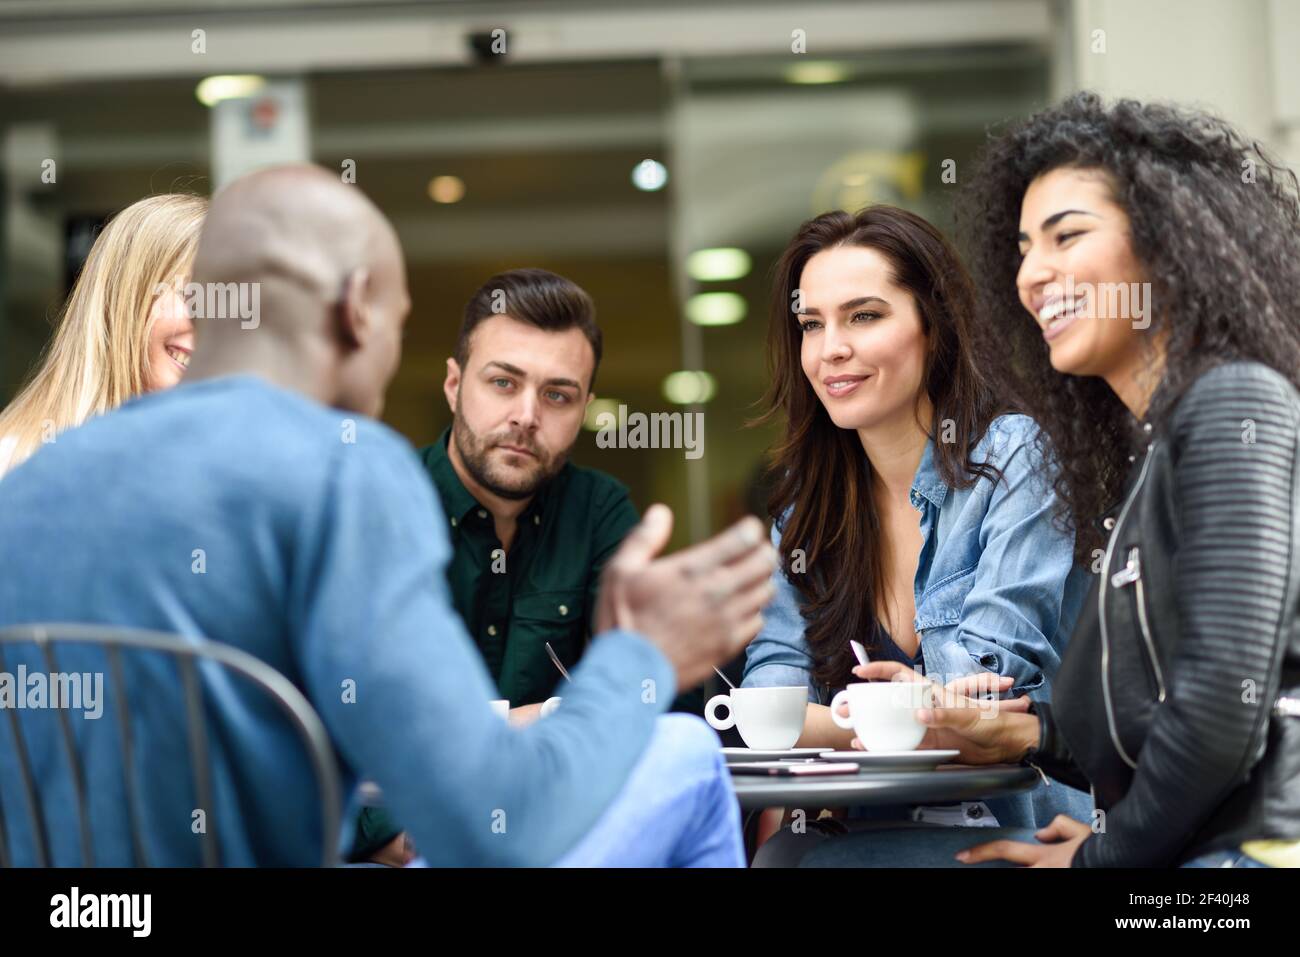 Multirassische Gruppe von fünf Freunden mit einem Kaffee zusammen. Drei Frauen und zwei Männer im Café, reden, lachen und genießen ihre Zeit. Lifestyle- und Freundschaftskonzepte mit echten Menschen-Modellen. Multirassische Gruppe von fünf Freunden mit einem Kaffee zusammen Stockfoto